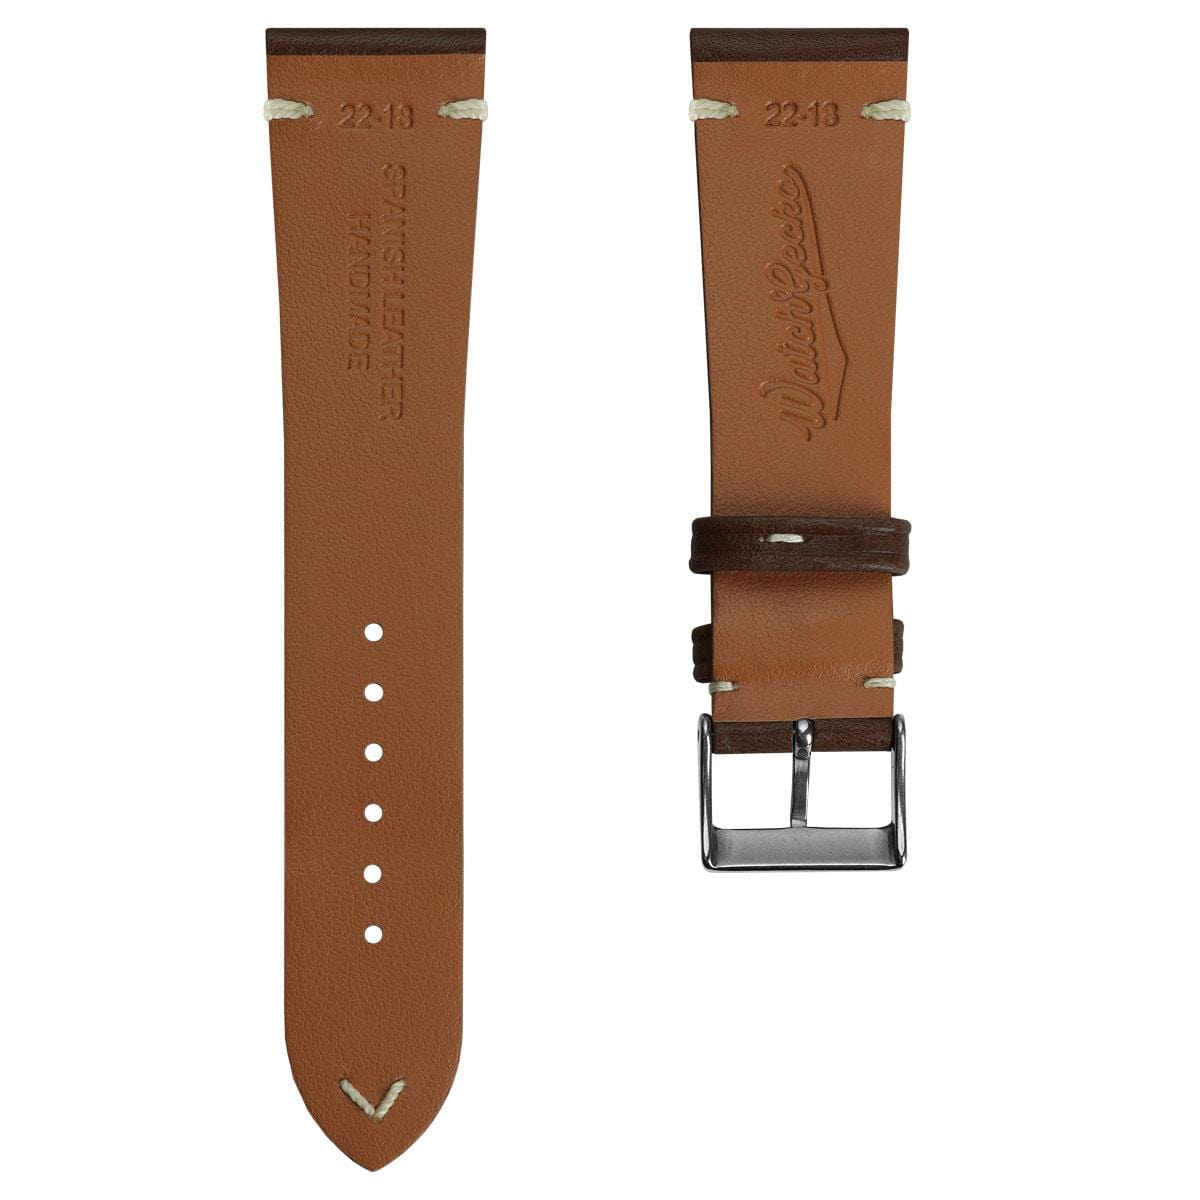 Turon Vintage Handmade Spanish Leather Watch Strap - Dark Brown